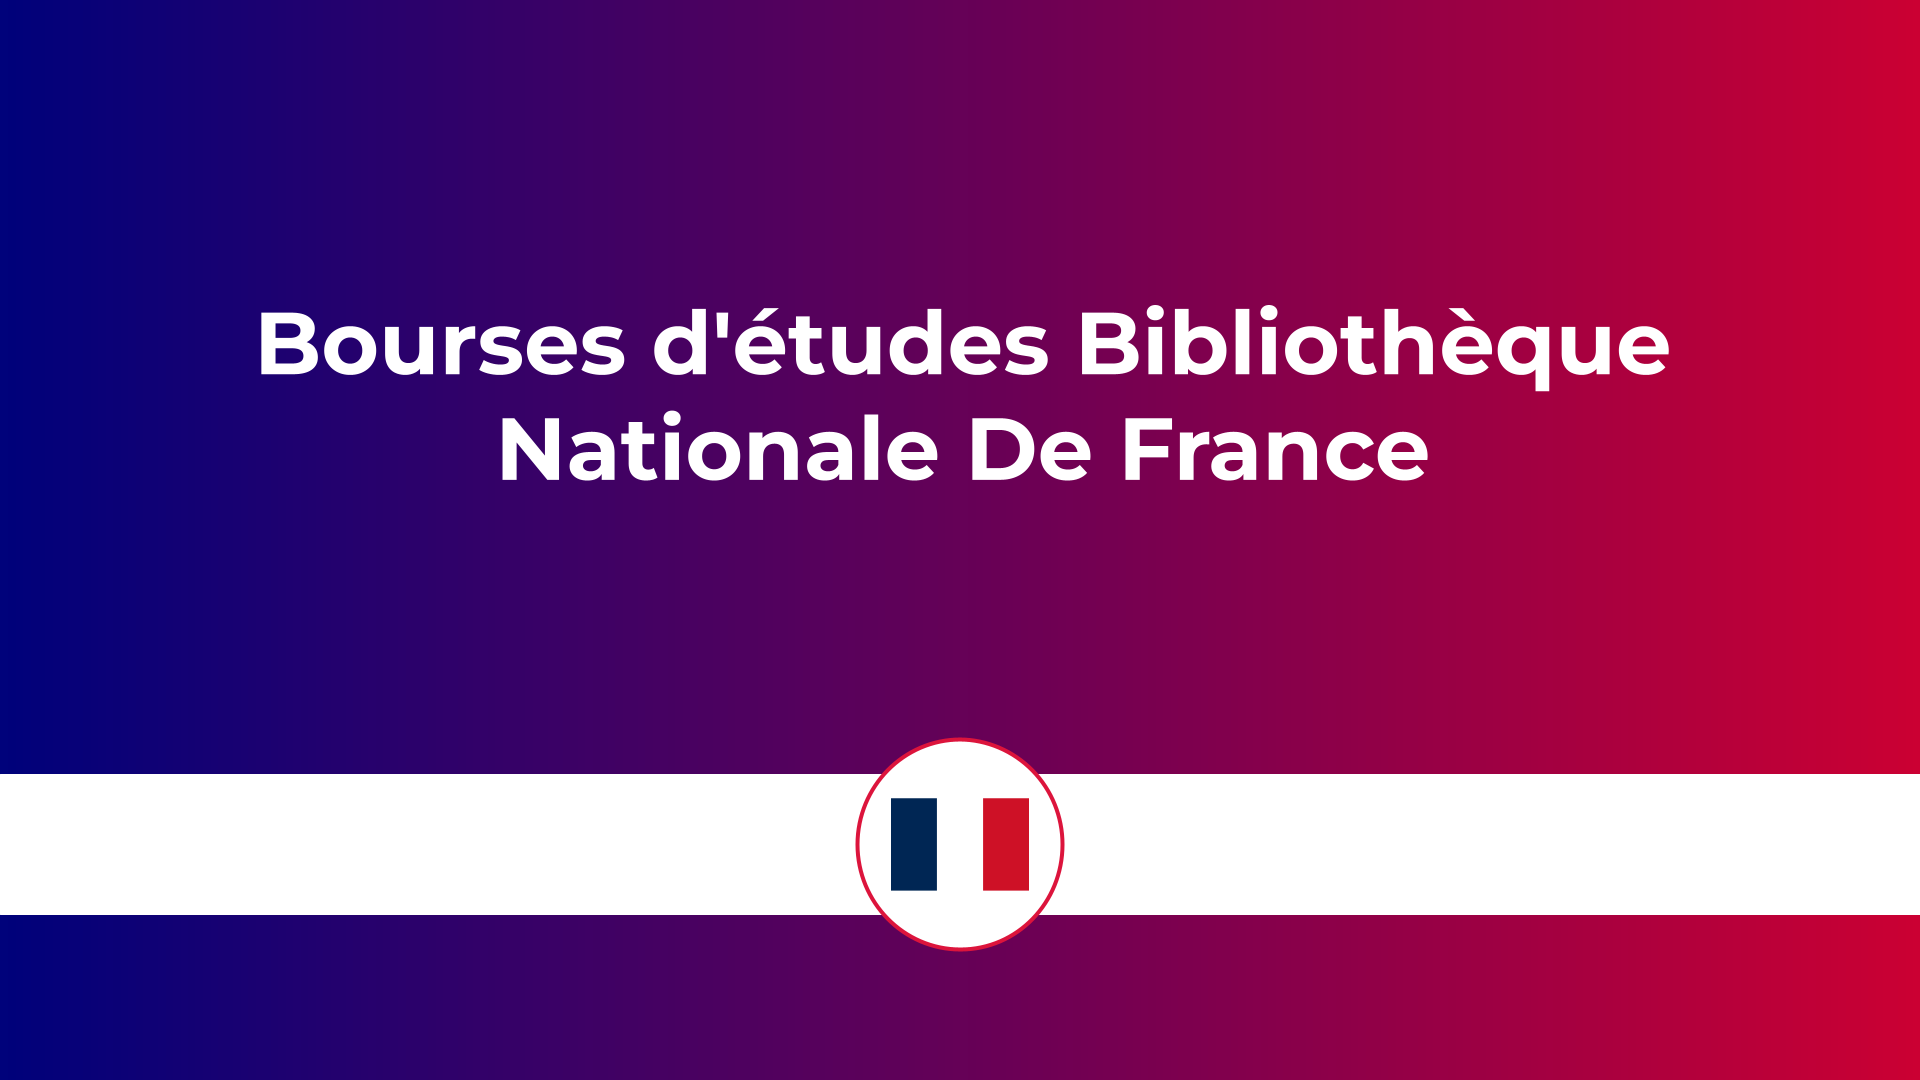 Bourses d'études Bibliothèque Nationale De France